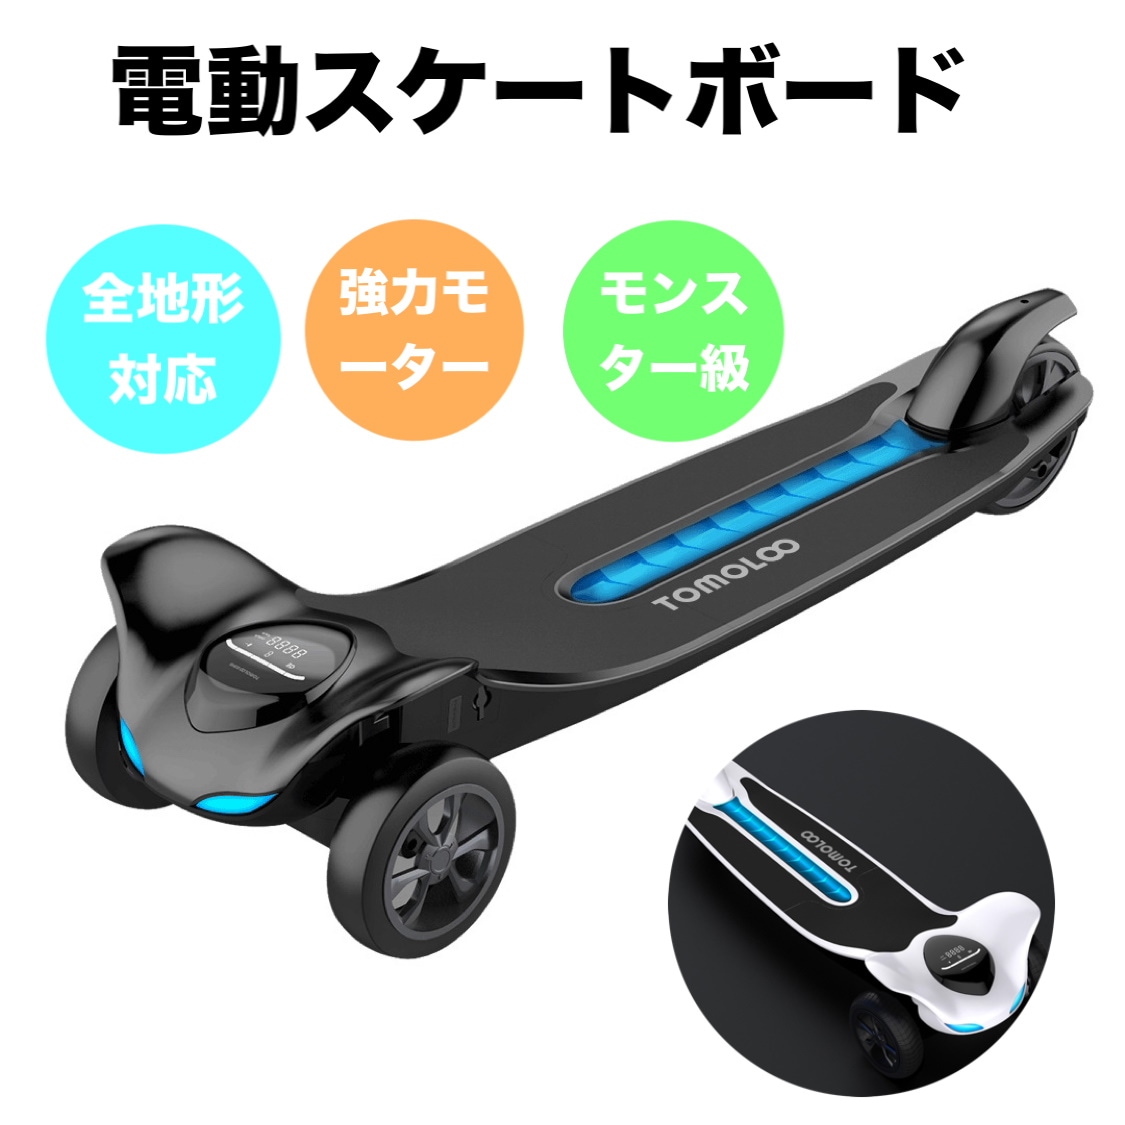 日本販売店 電動スケートボード 電動スケボー 全地形対応 超高出力 